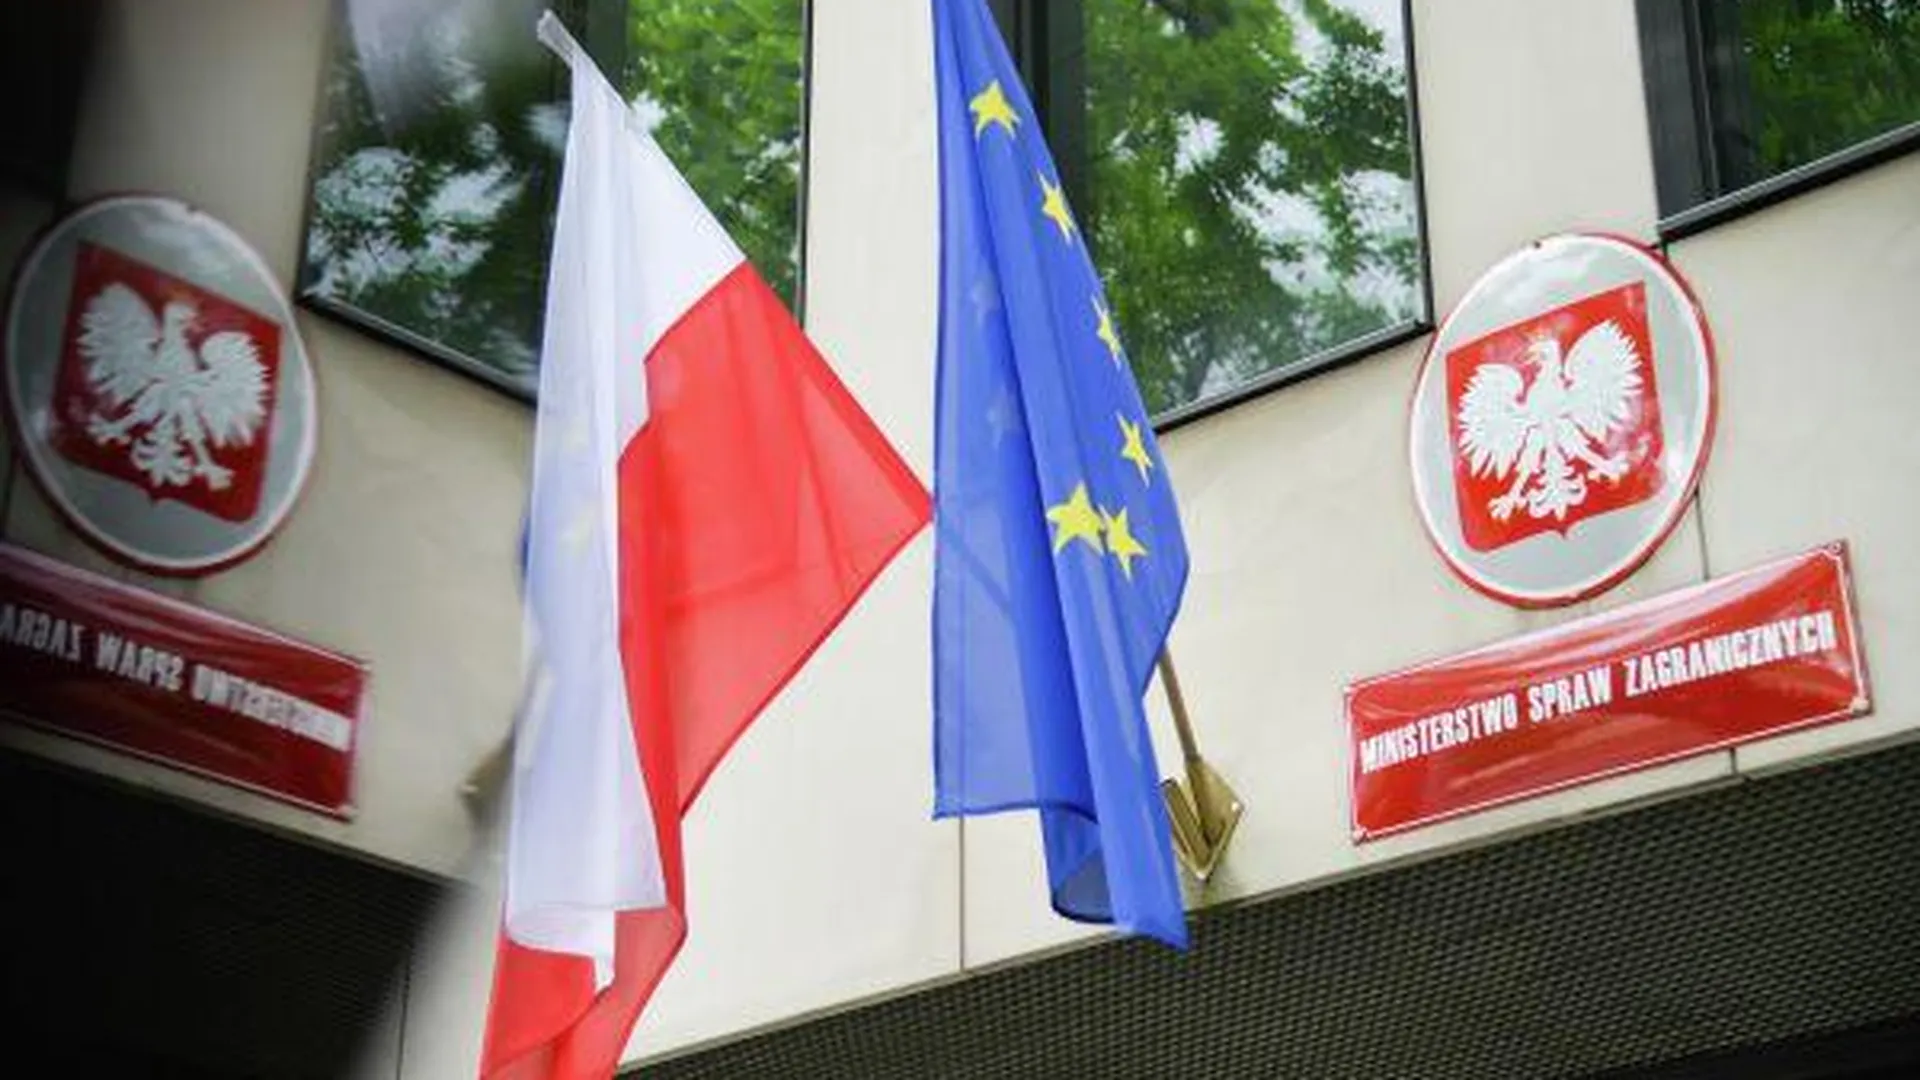 Польский вице-премьер спровоцировал скандал своим фото на фоне символики УПА 